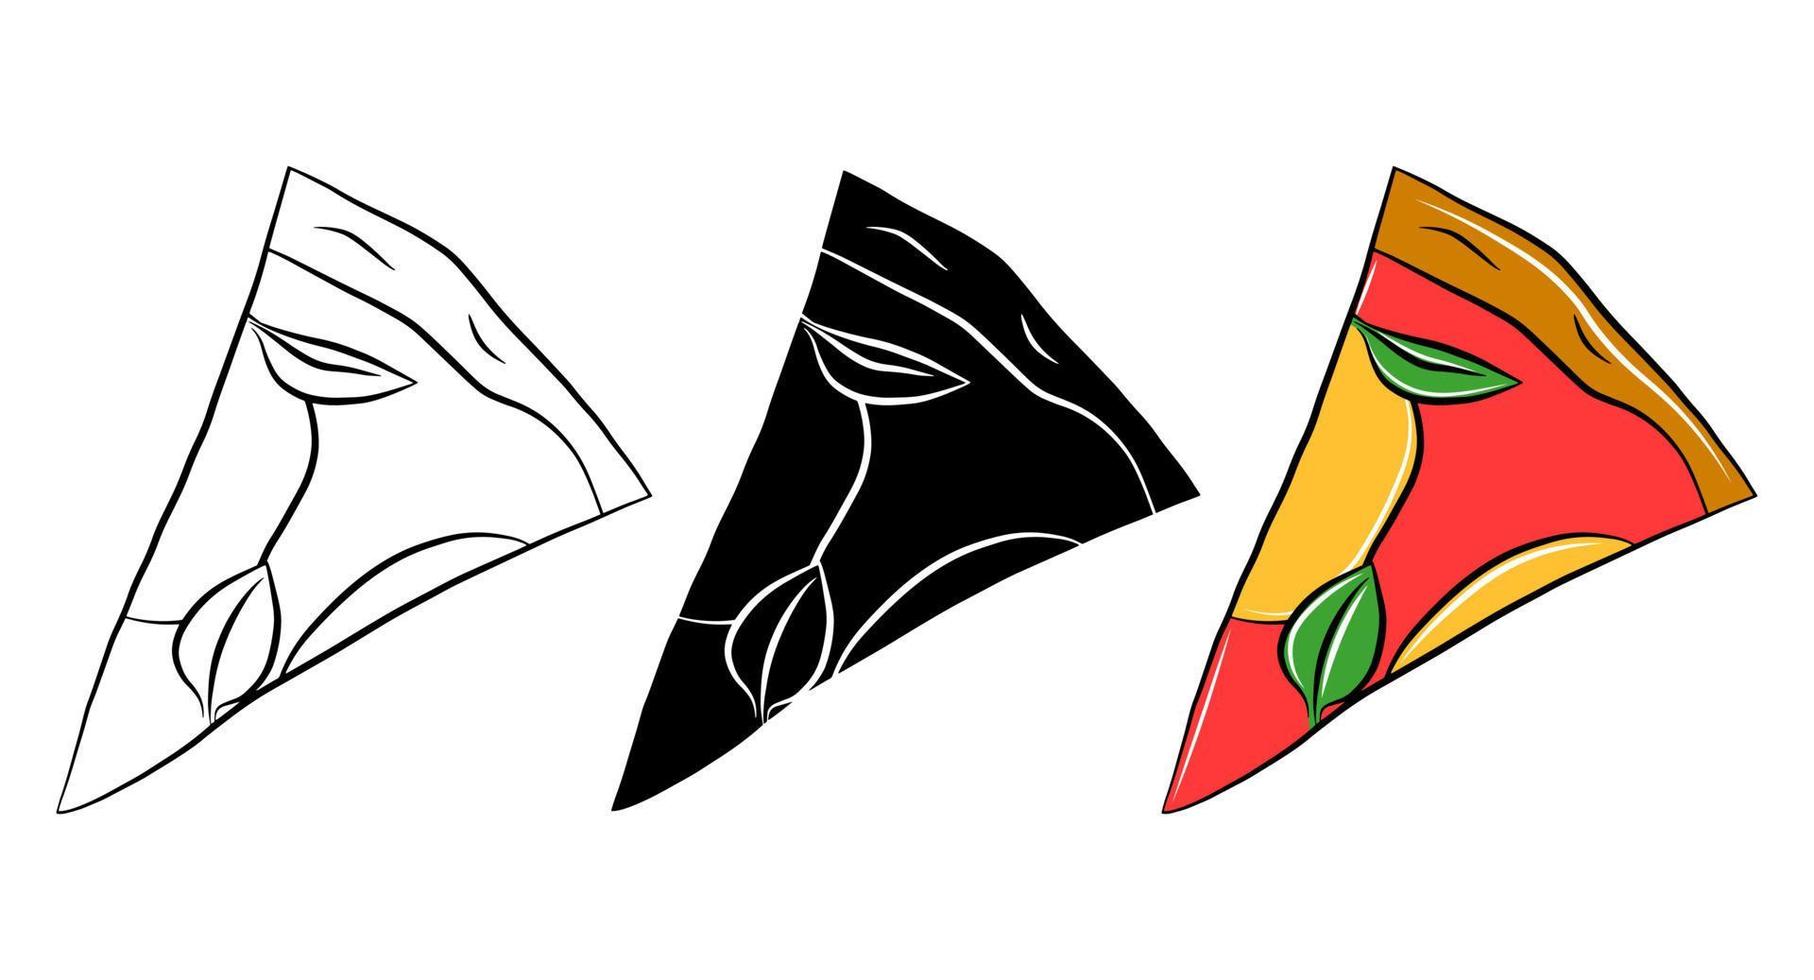 pizza skiva vektor Ikonuppsättning. doodle grafisk logotyp designelement. handritad linjär kontur. enkelt ohälsosamt gatusnack.